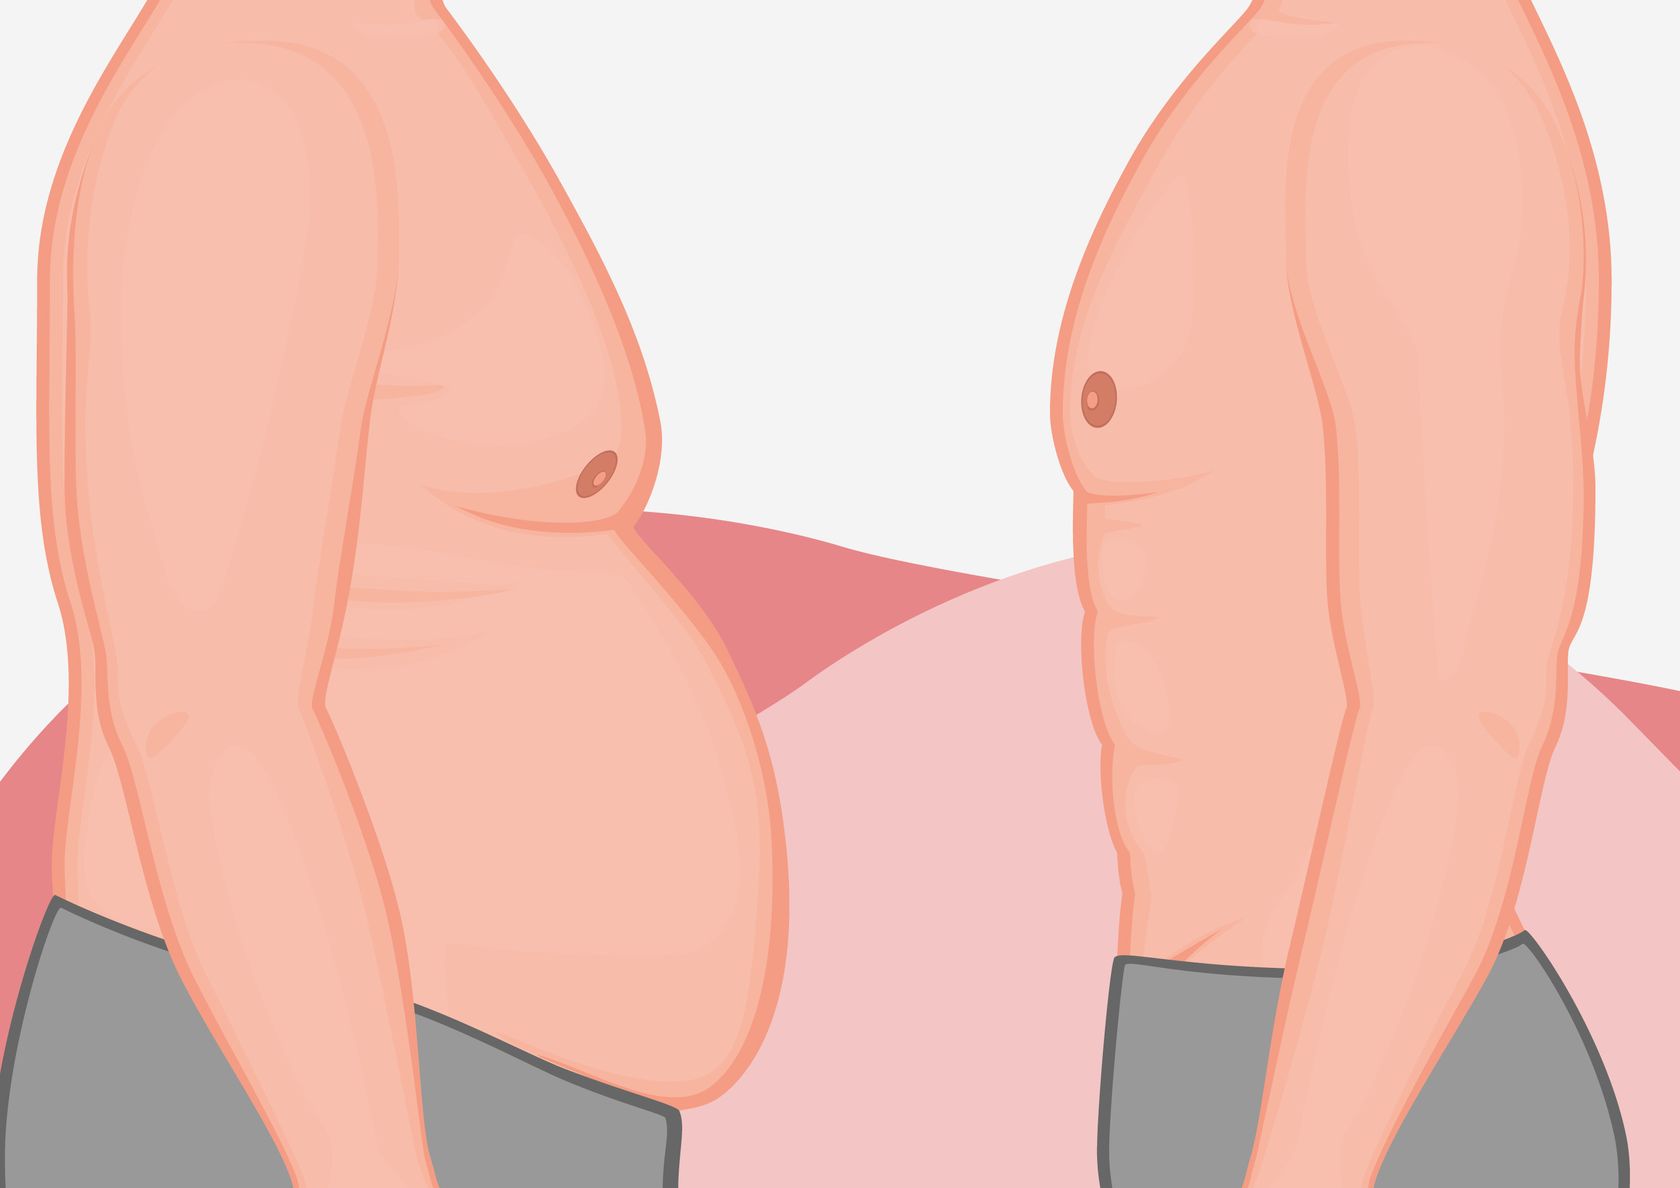 Illustration links übergewichtiger Körper rechts schlanker Körper